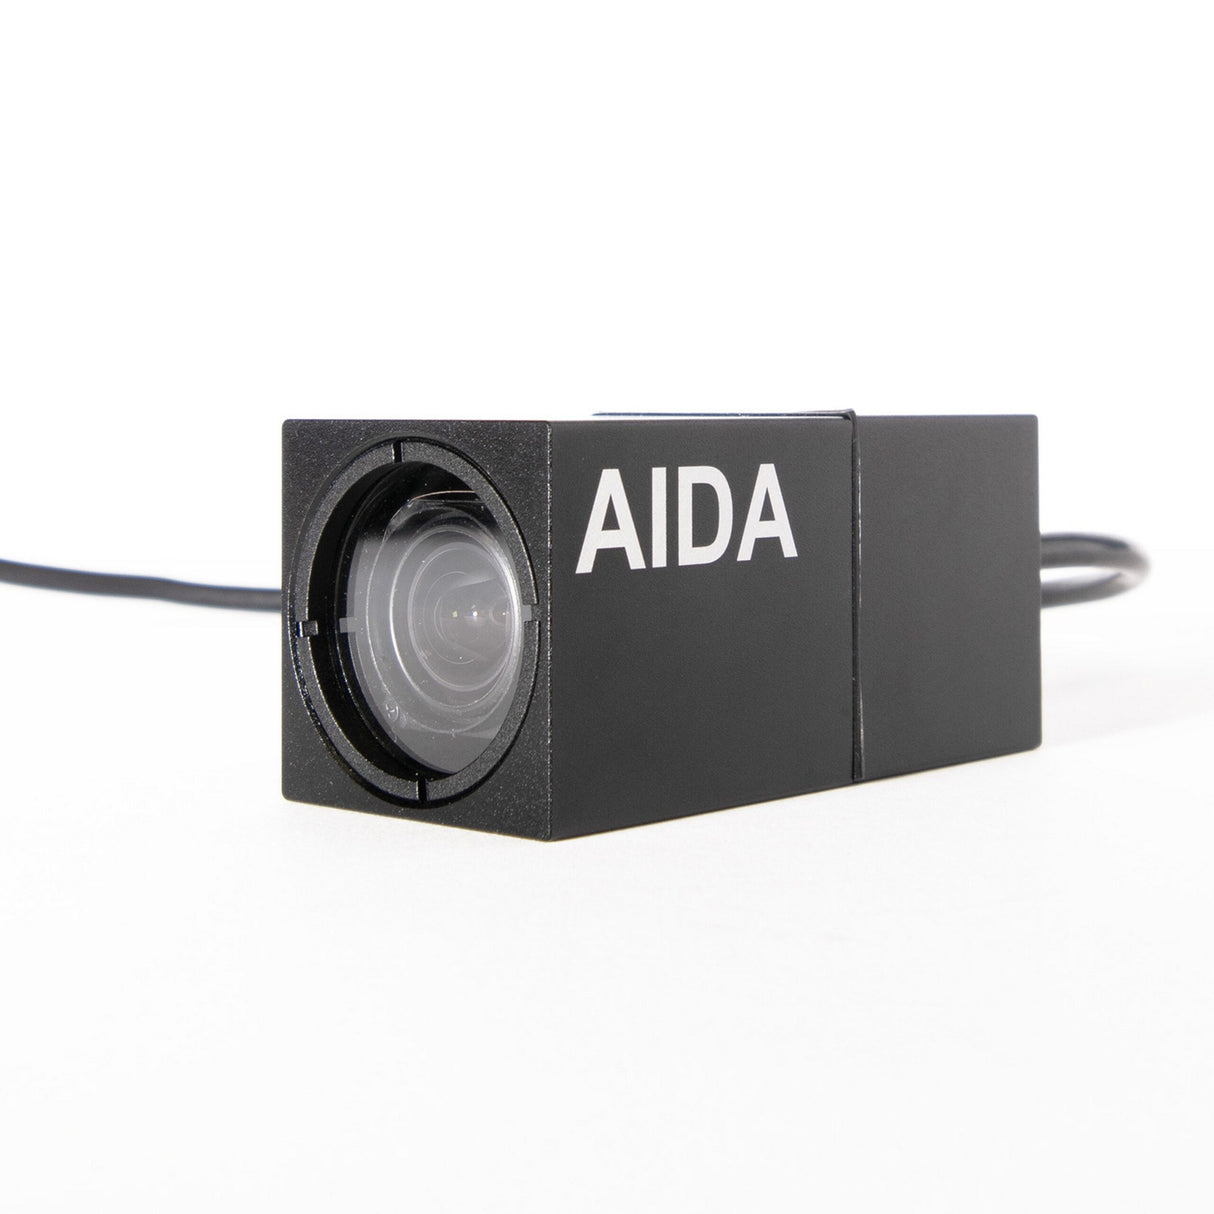 AIDA HD-X3L-IP67 Full HD 1080p60 Weatherproof 3G-SDI 3.5x POV Camera